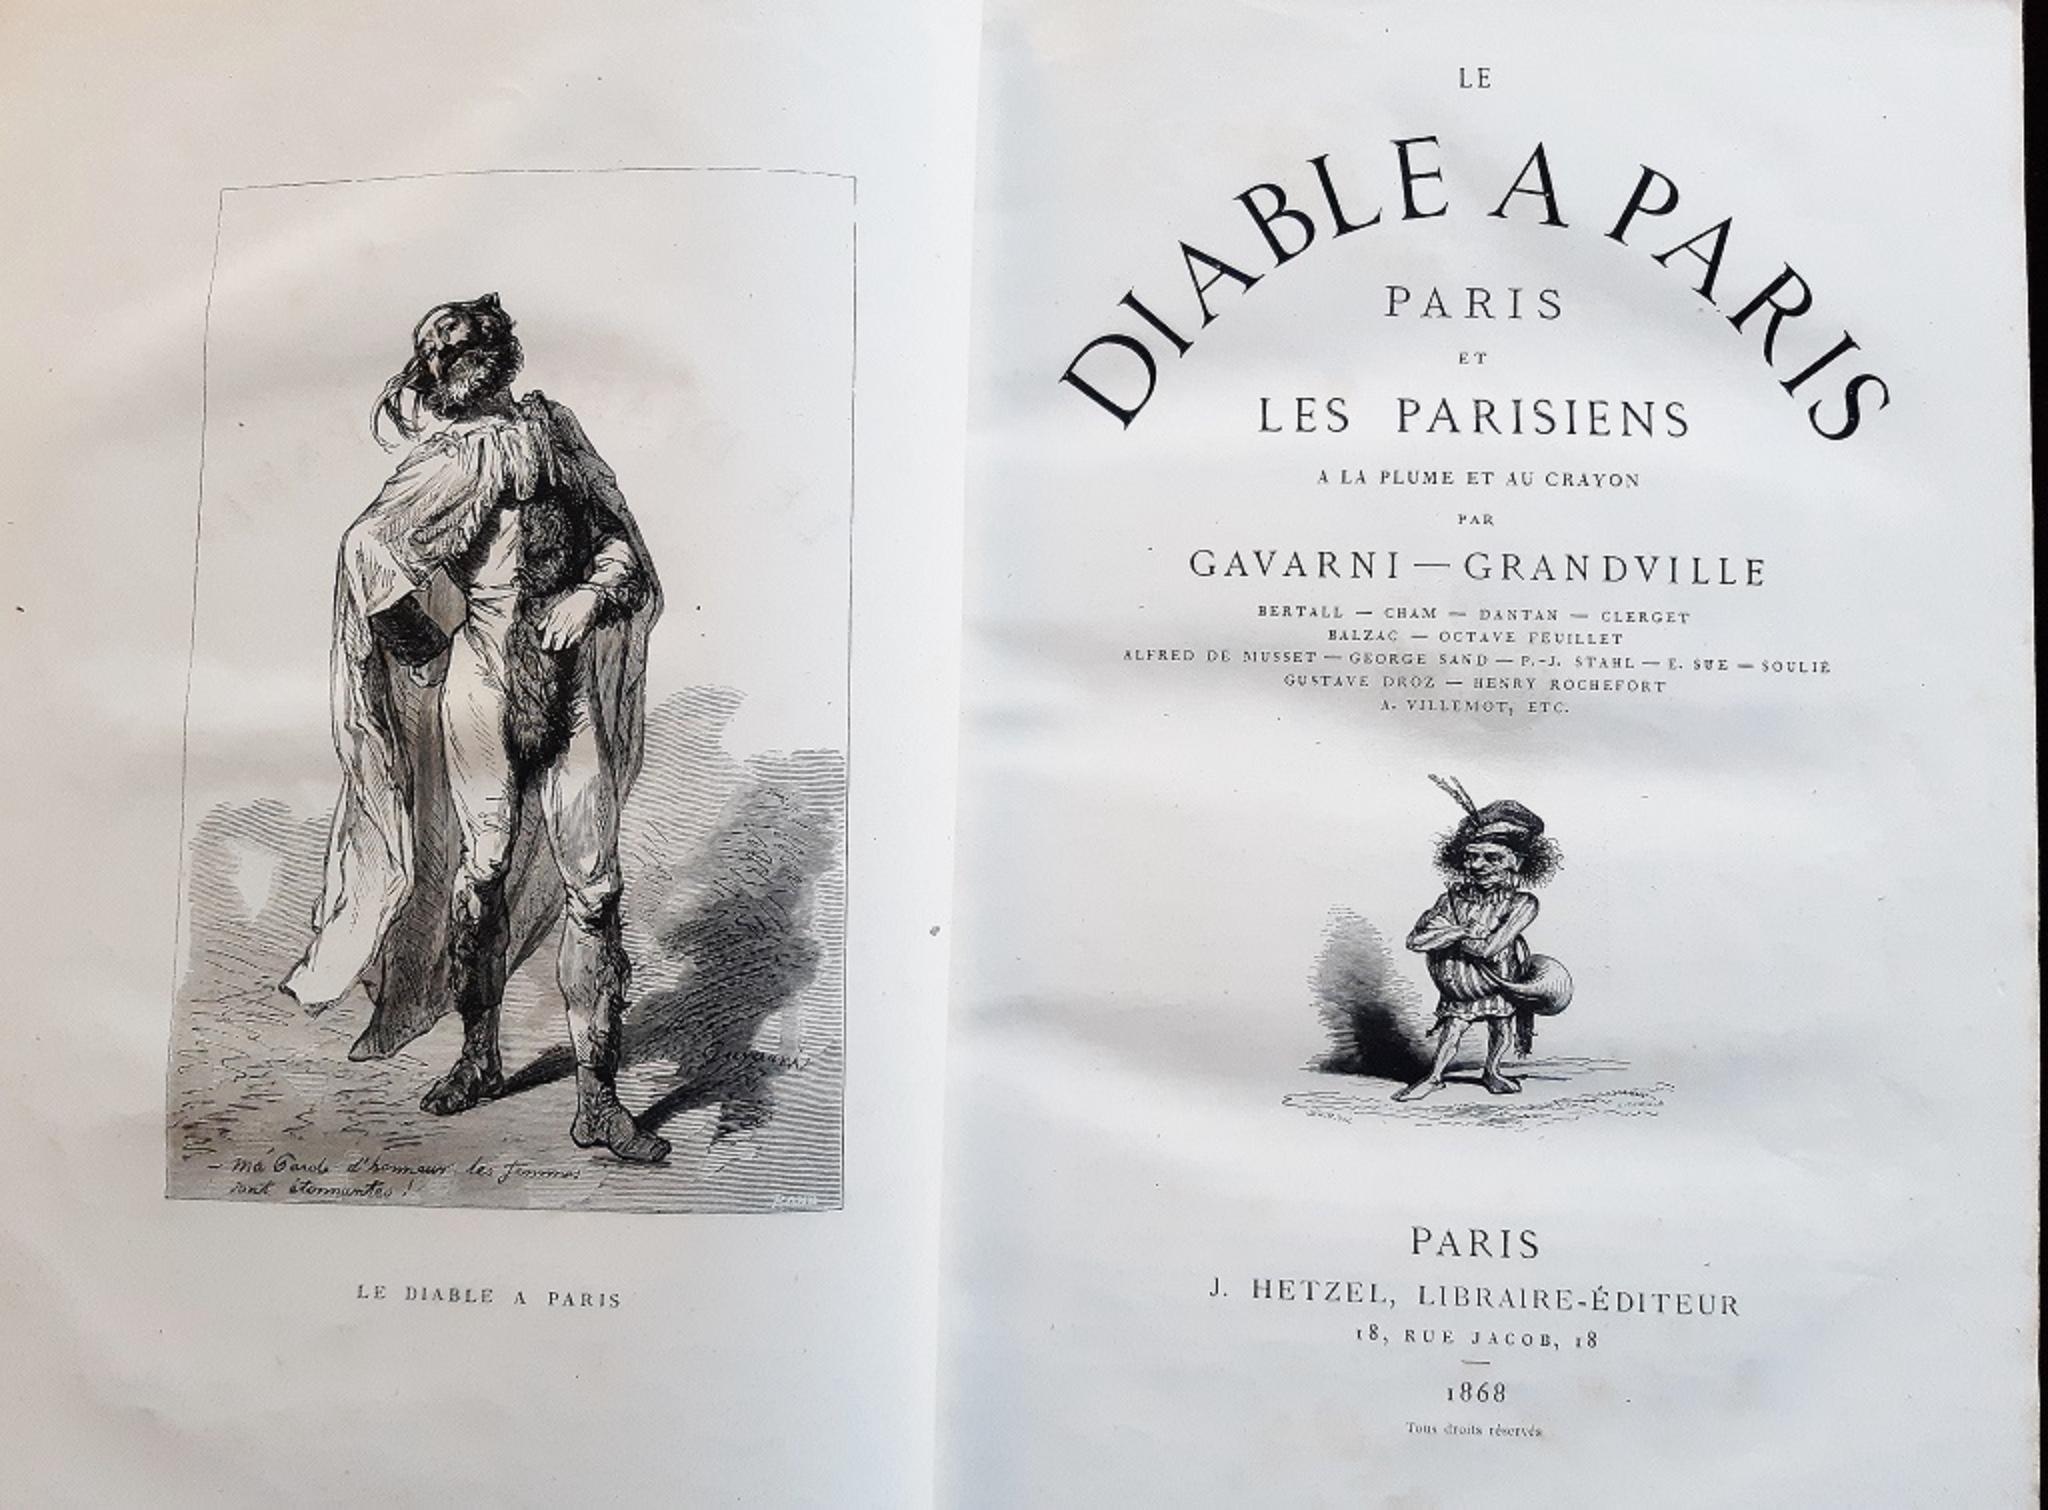 Le Diable à Paris - Rare Book Illustrated by Paul Gavarni - 1869